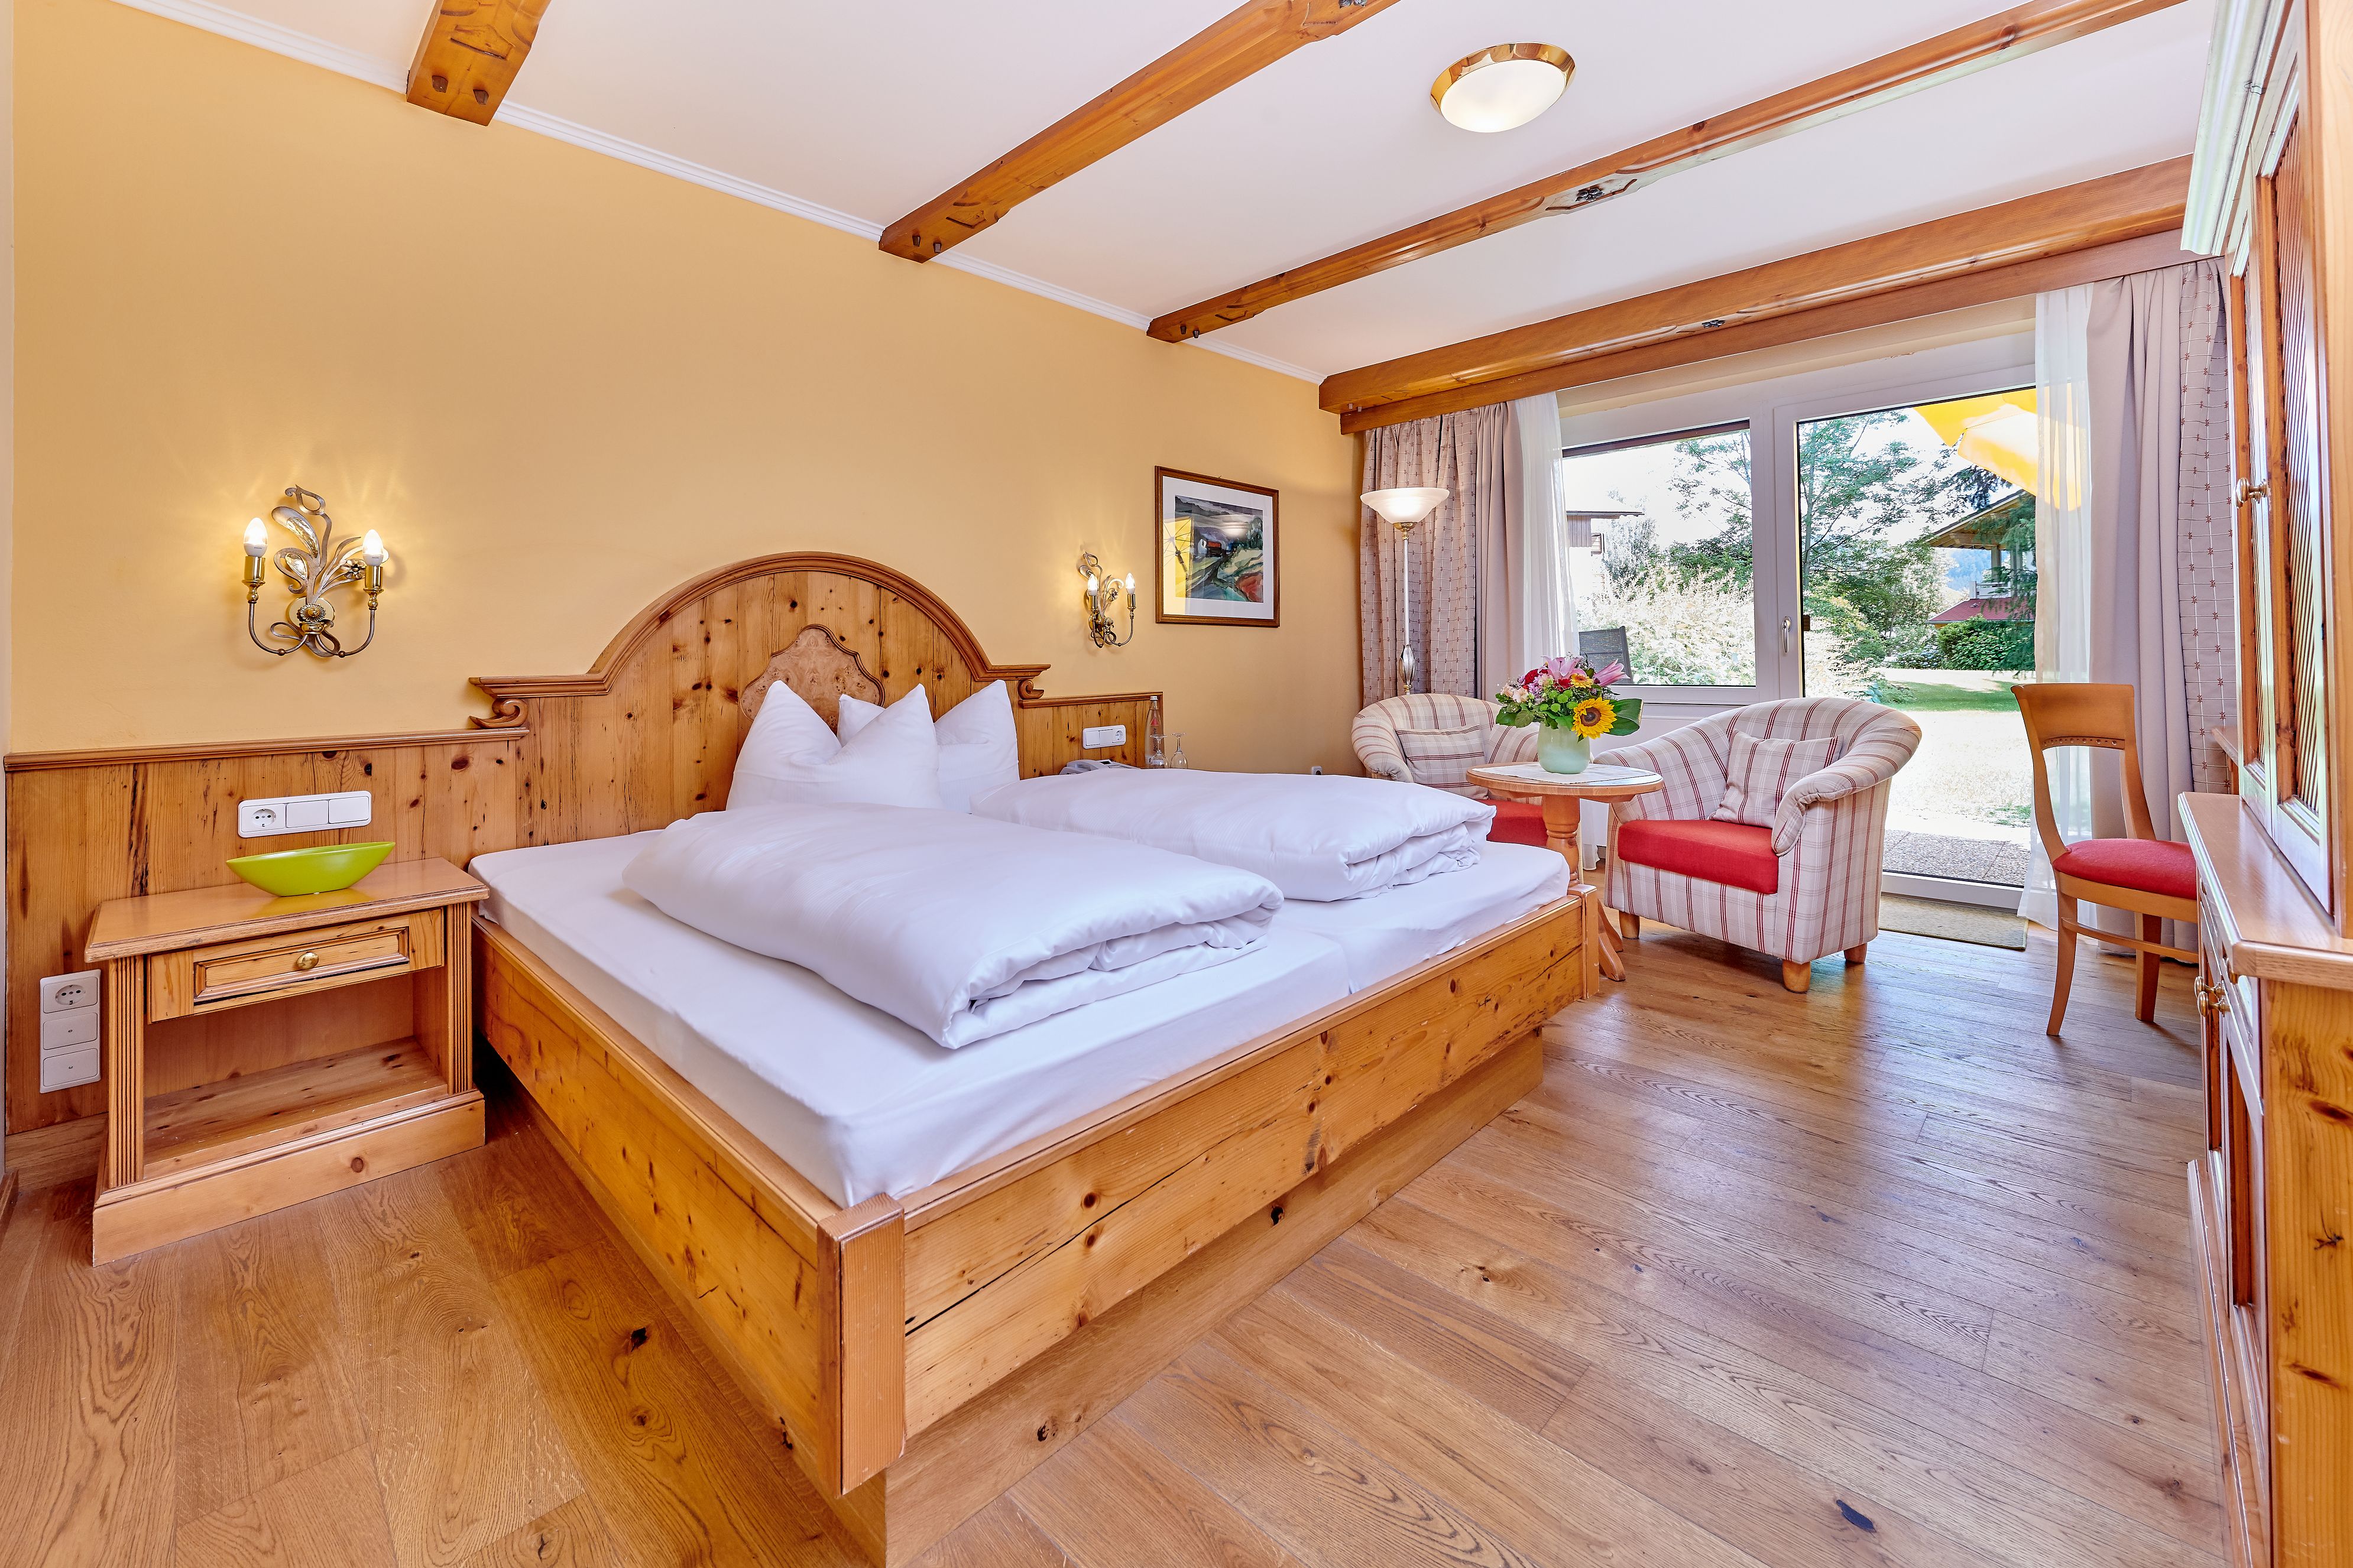 3 Übernachtungen für 2 Personen im NEUE POST HOTEL in Bodenmais, Bayerischer Wald